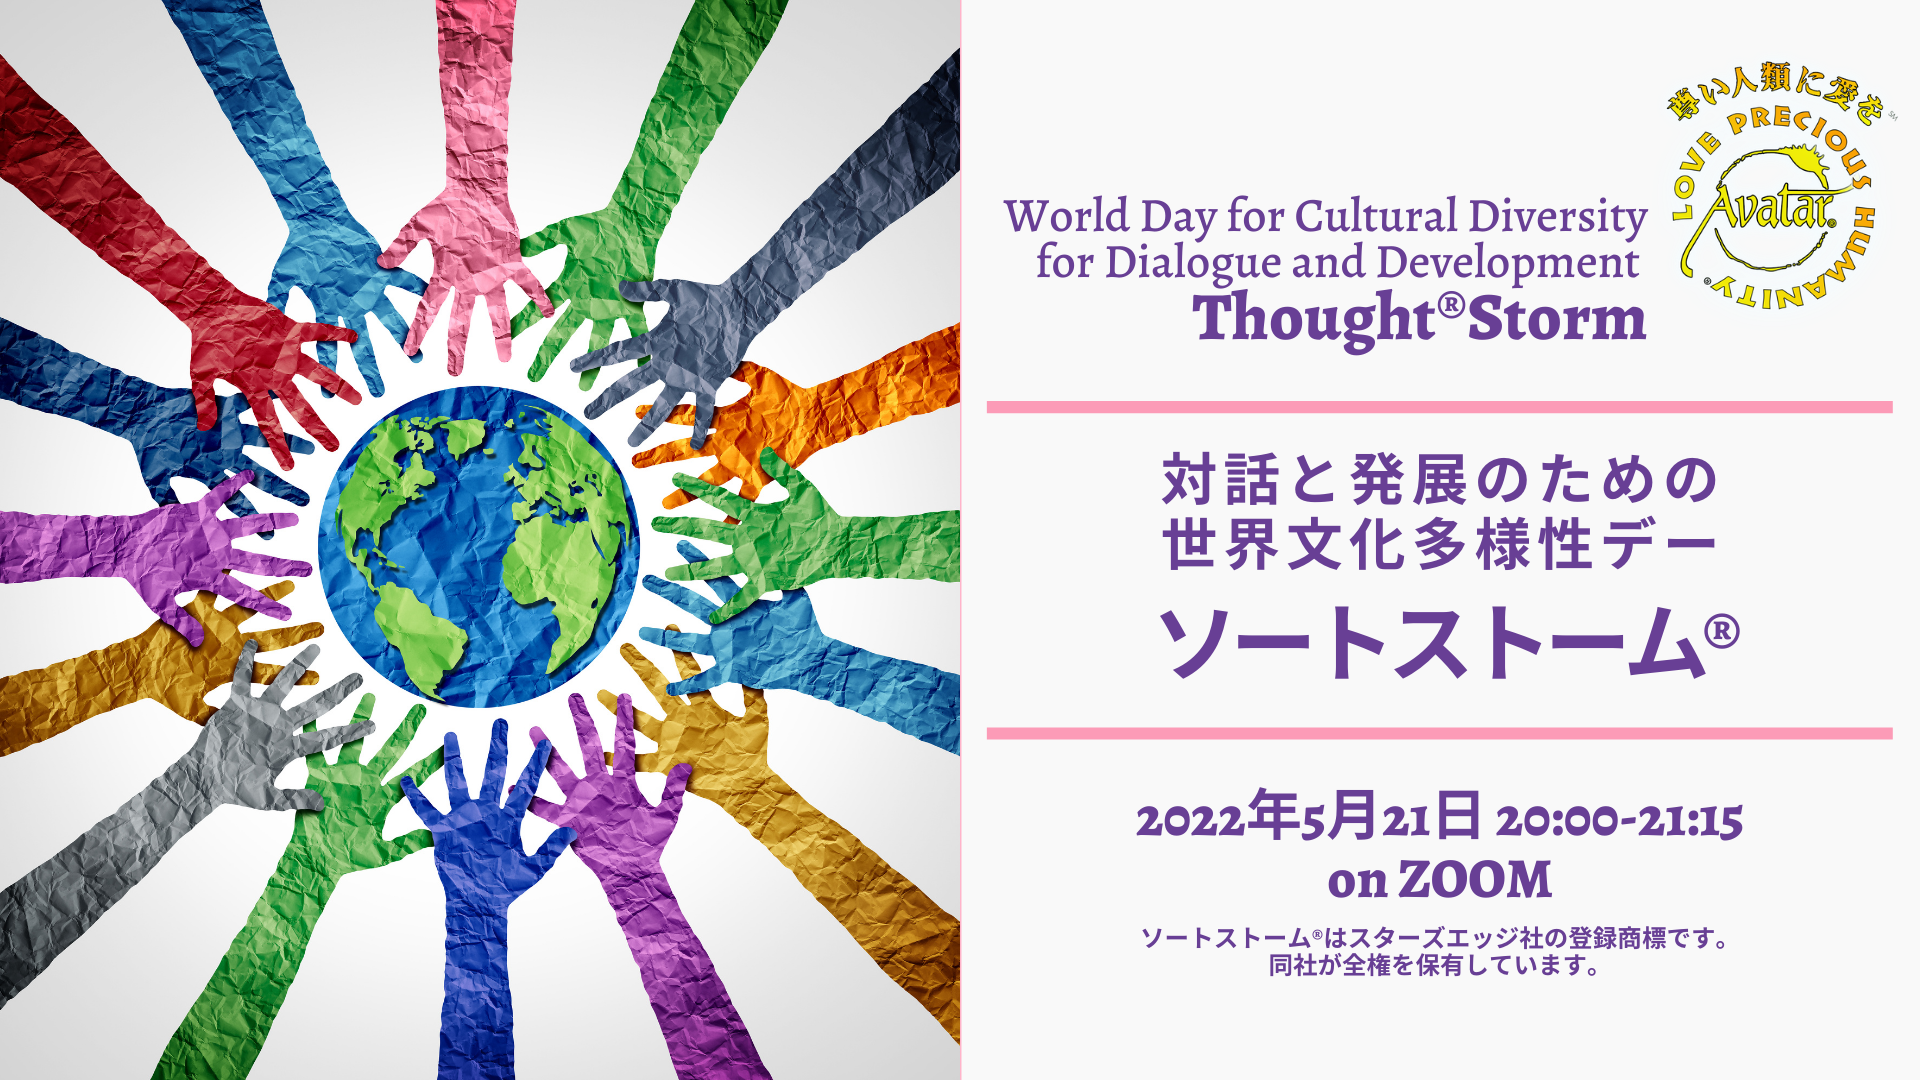 2022年 国際デーにちなんだソートストーム®︎を、1年間通して開催します。5月21日は、「対話と発展のための世界文化多様性デー」にちなんだテーマでソートストームを行います。